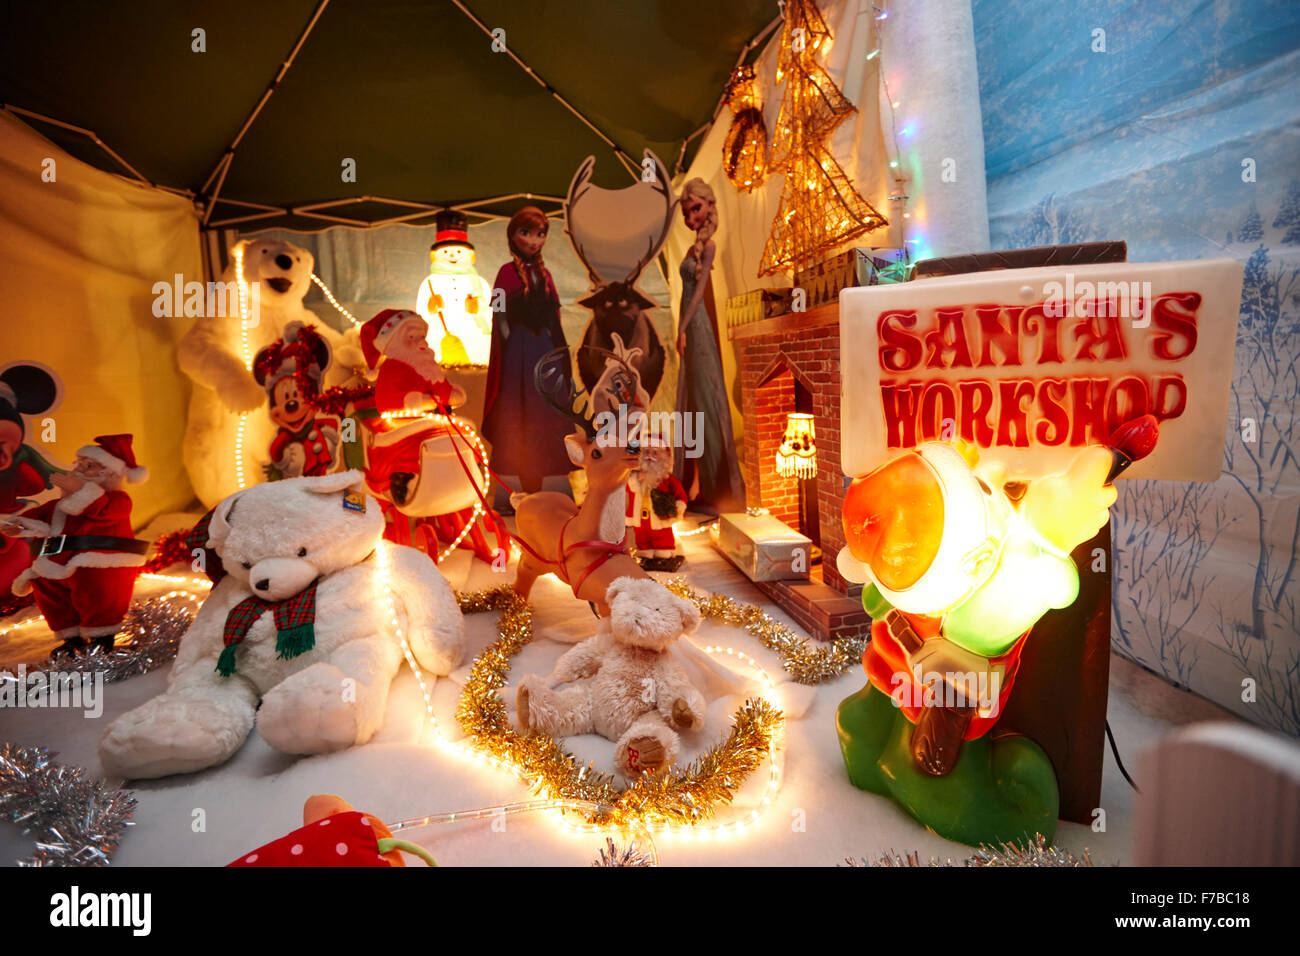 Santas workshop afficher dans une grotte santa saisonnier temporaire au Royaume-Uni Banque D'Images